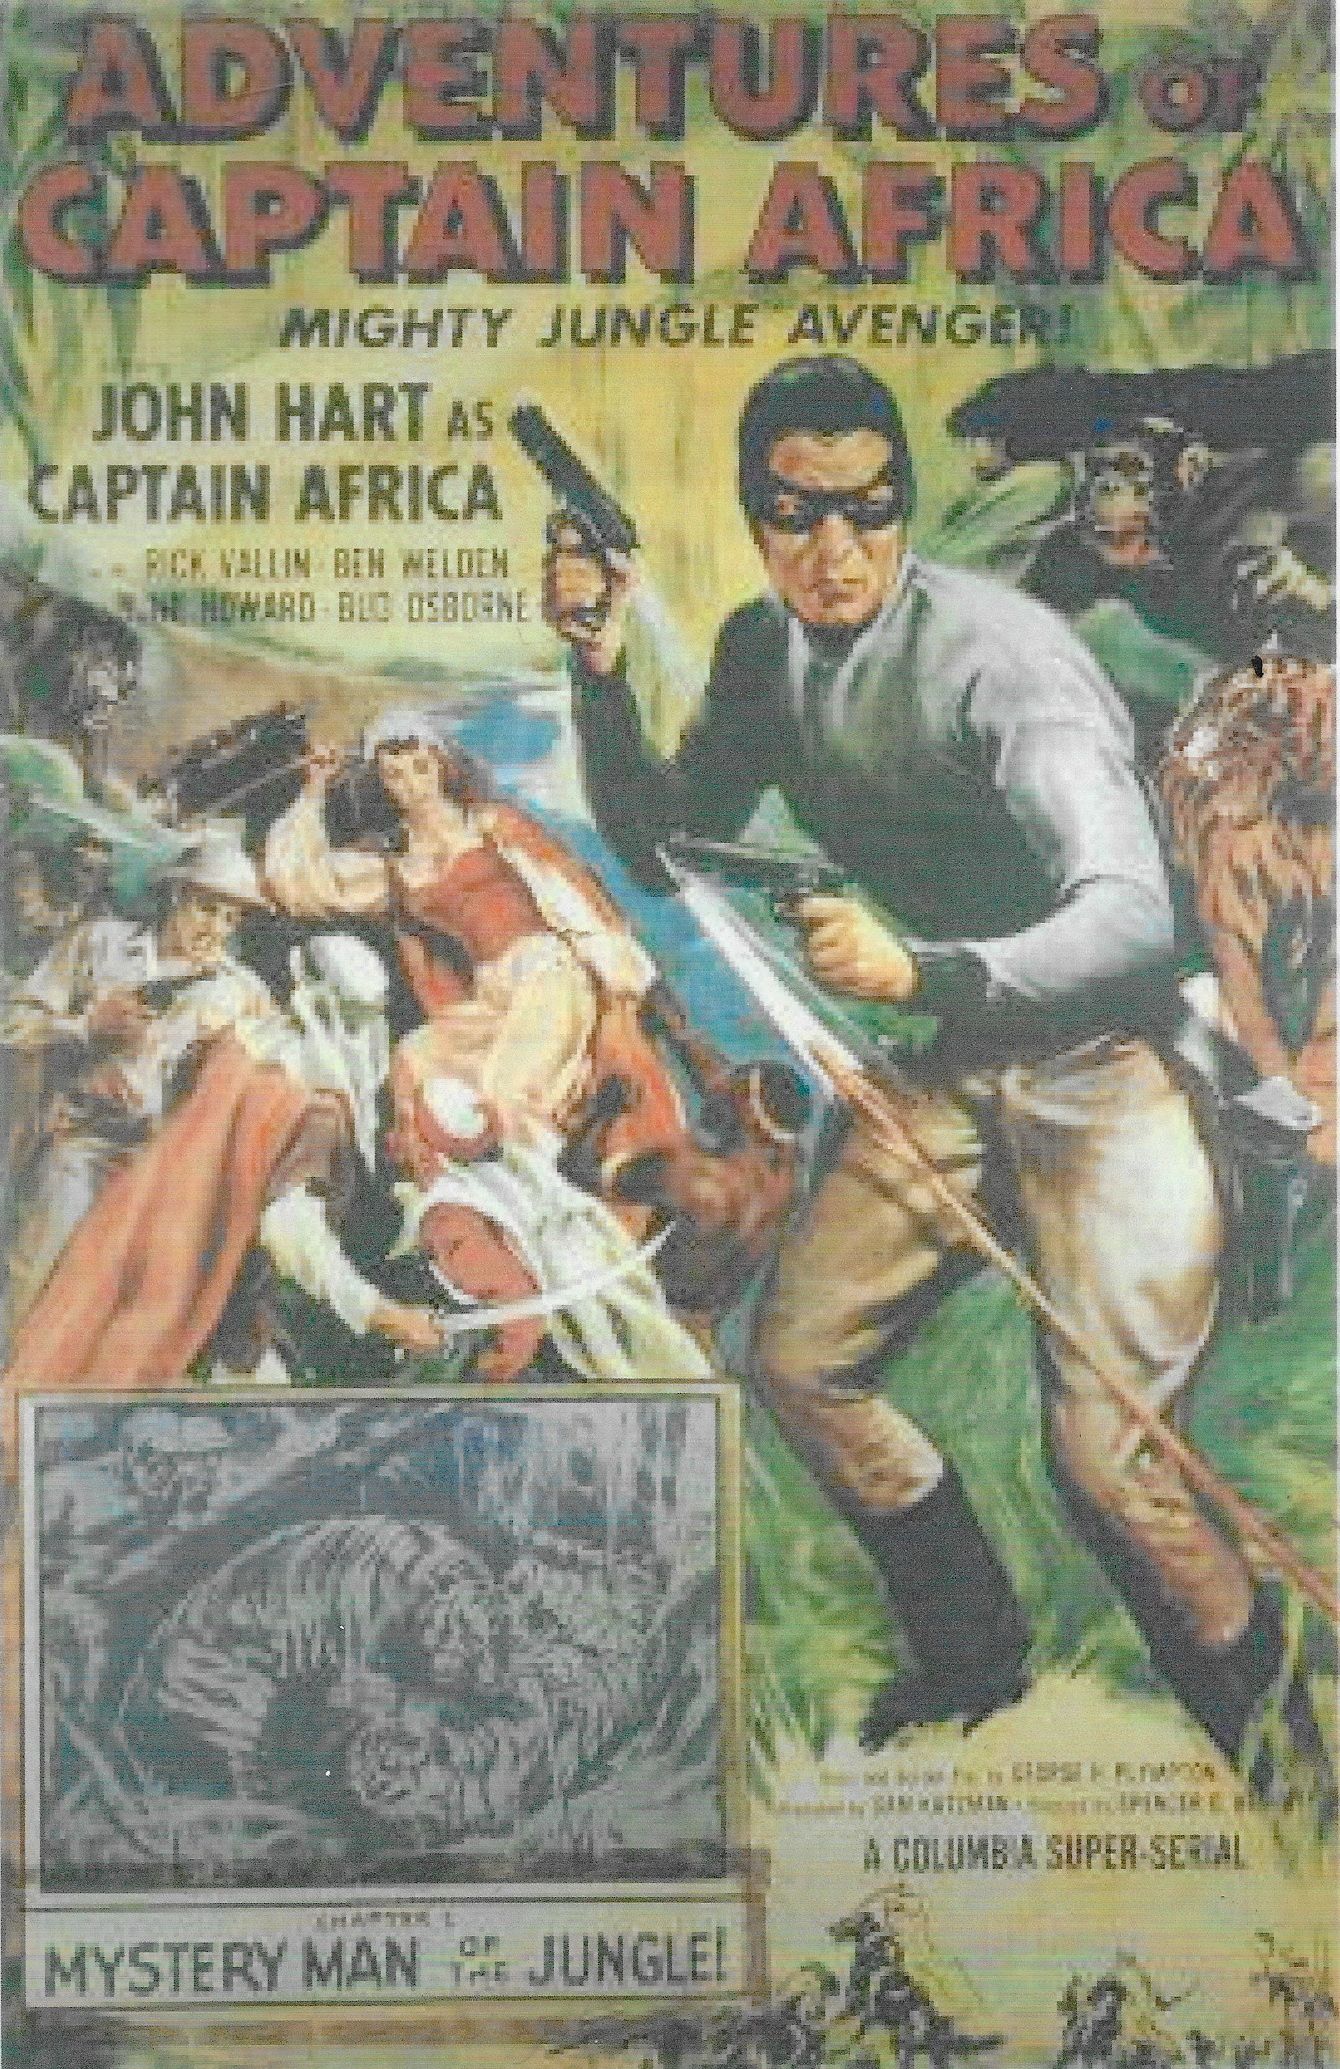 Adventures of Captain Africa, Mighty Jungle Avenger! (1955) starring John Hart on DVD on DVD